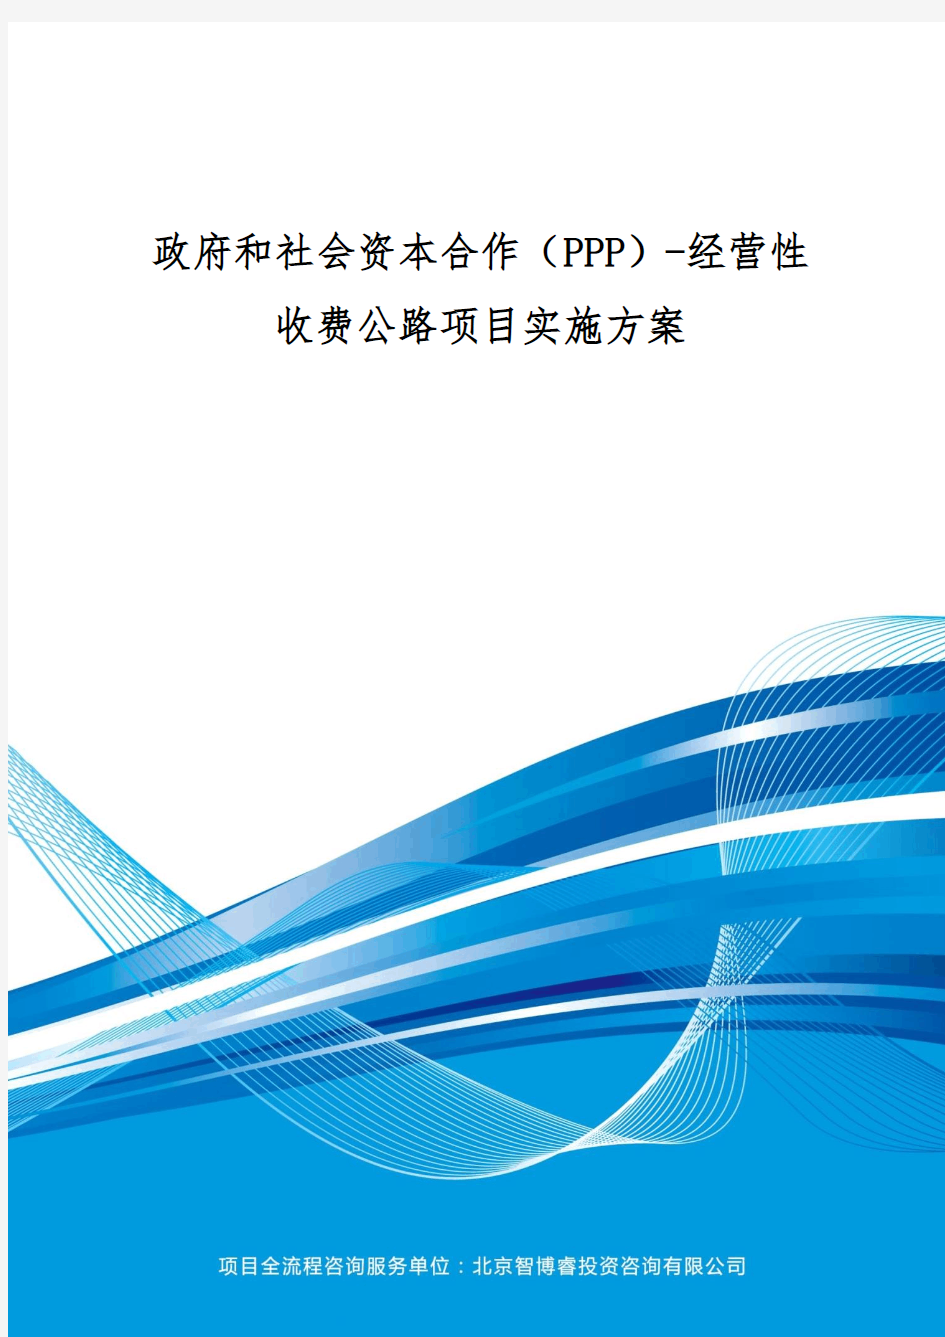 政府和社会资本合作(PPP)-经营性收费公路项目实施方案(编制大纲)